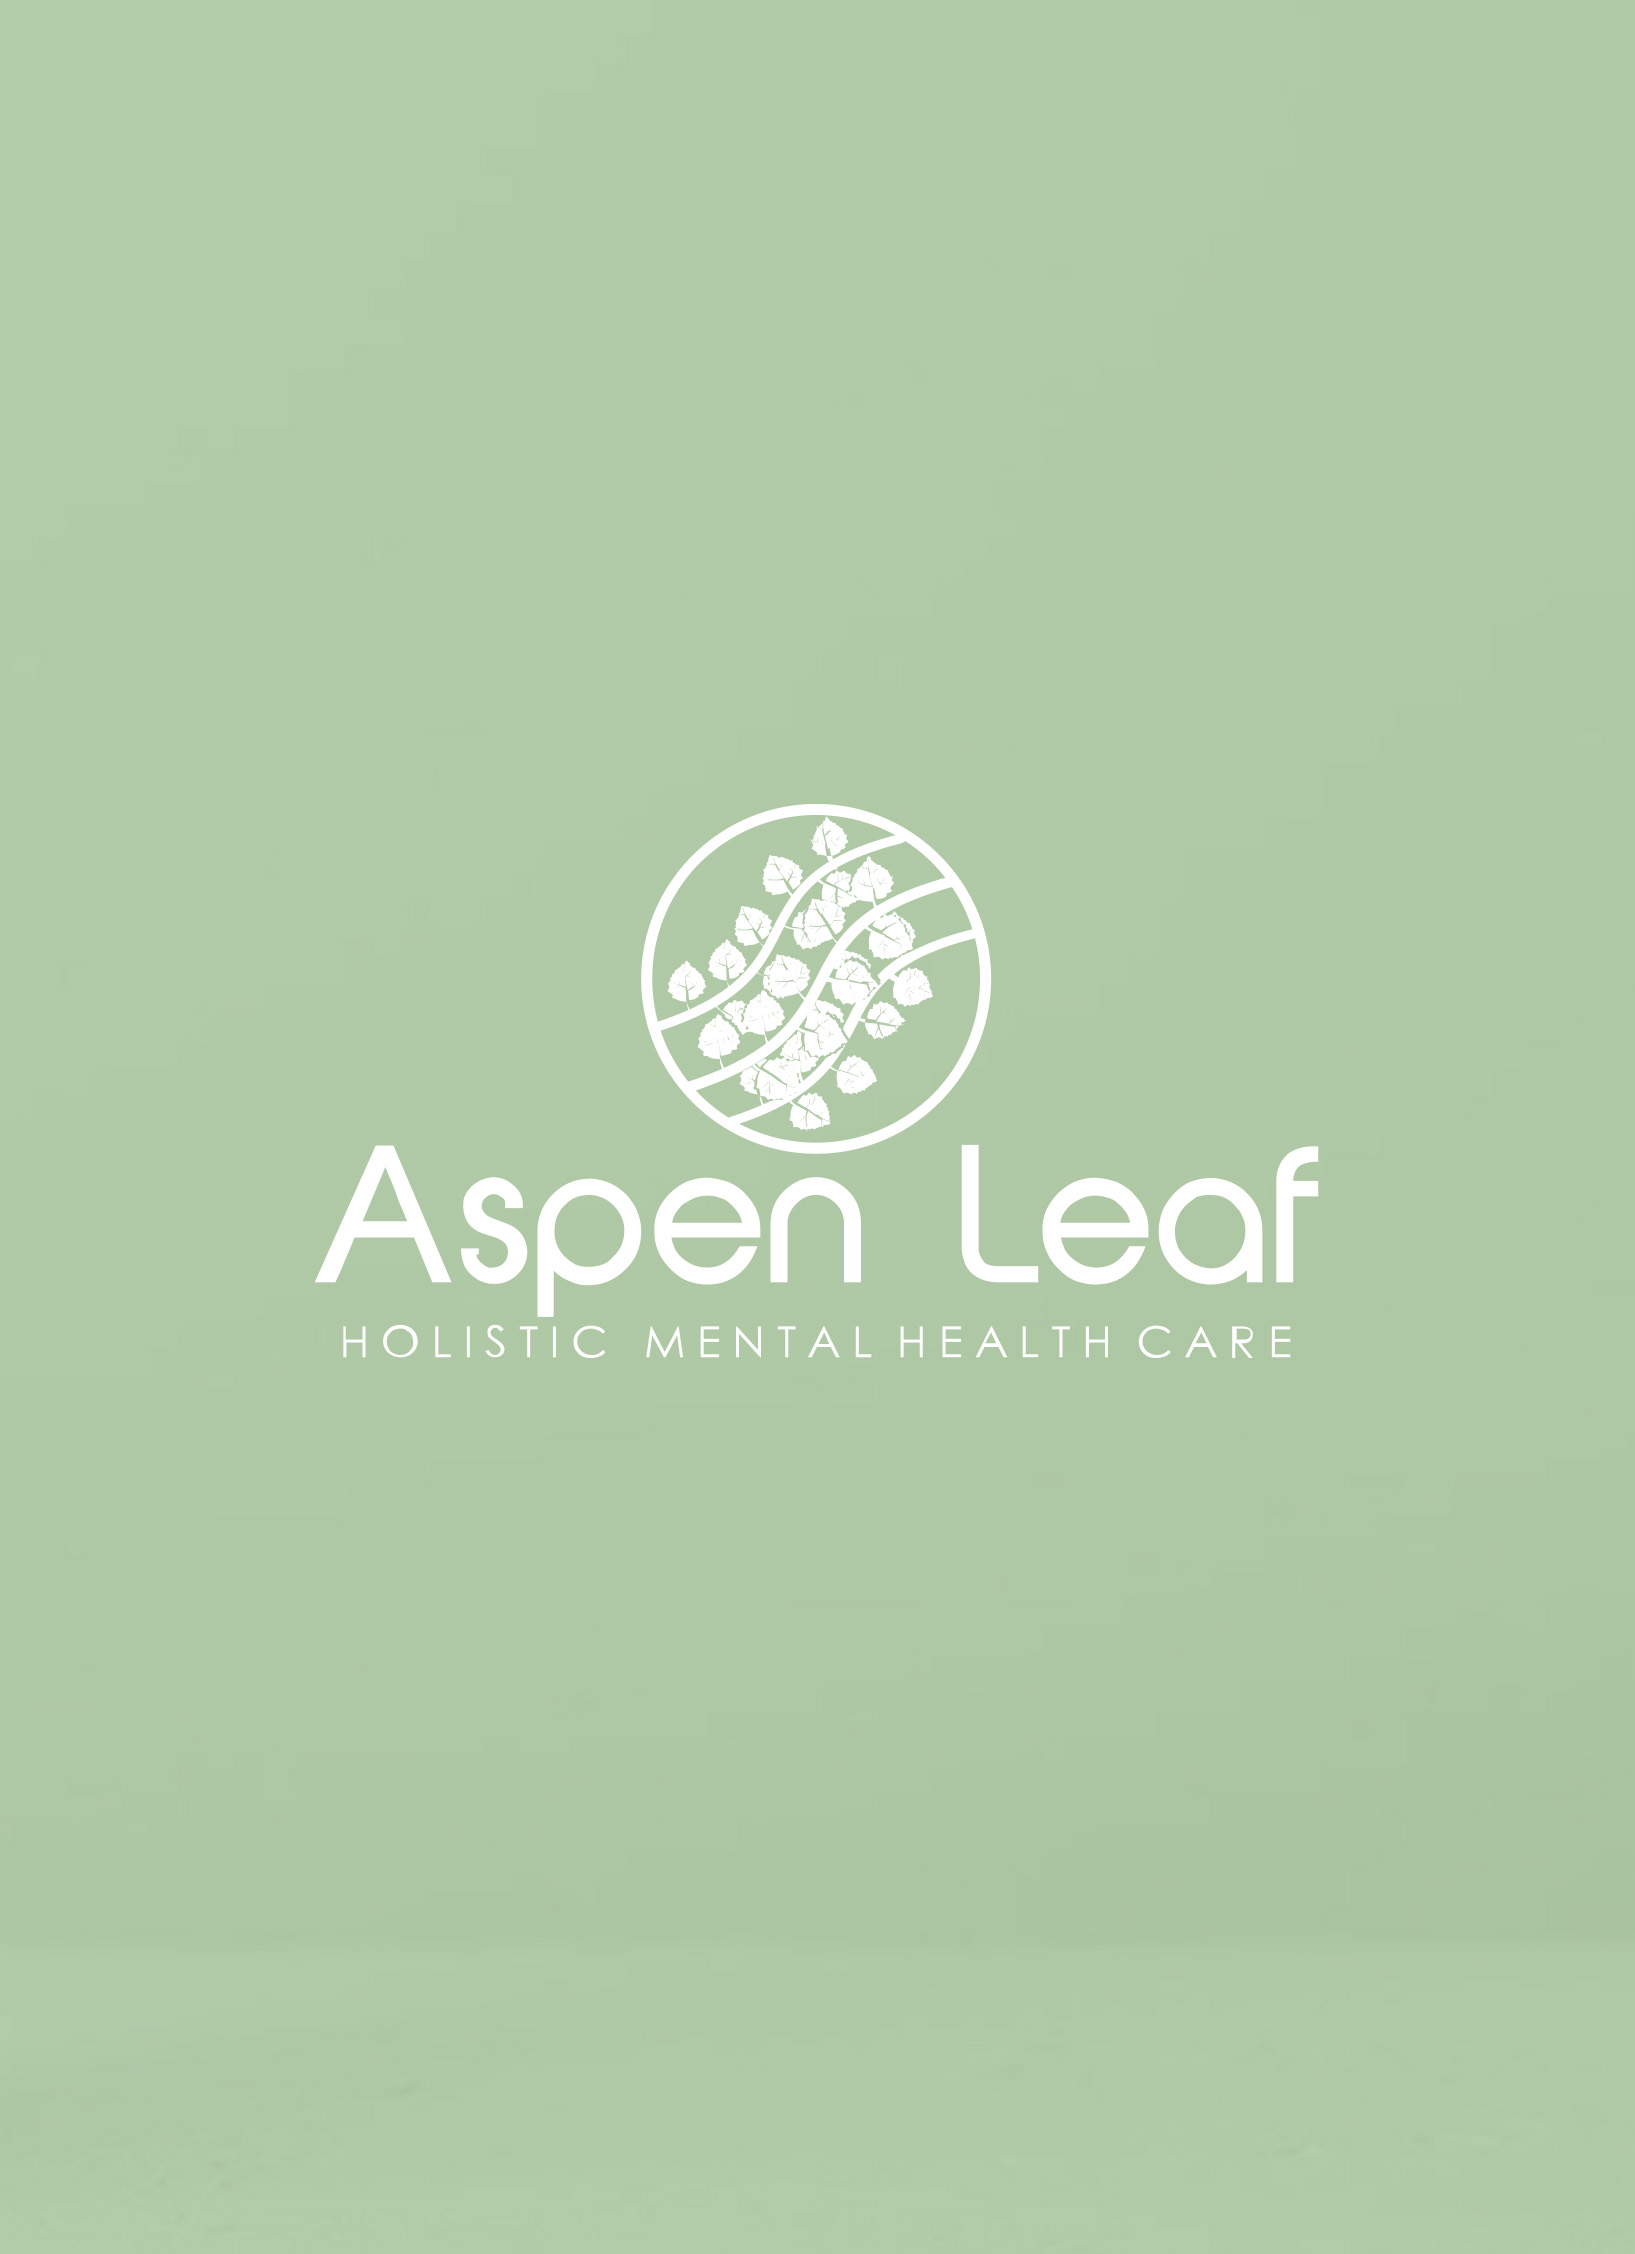 Aspen Leaf Holistic Mental Health Care